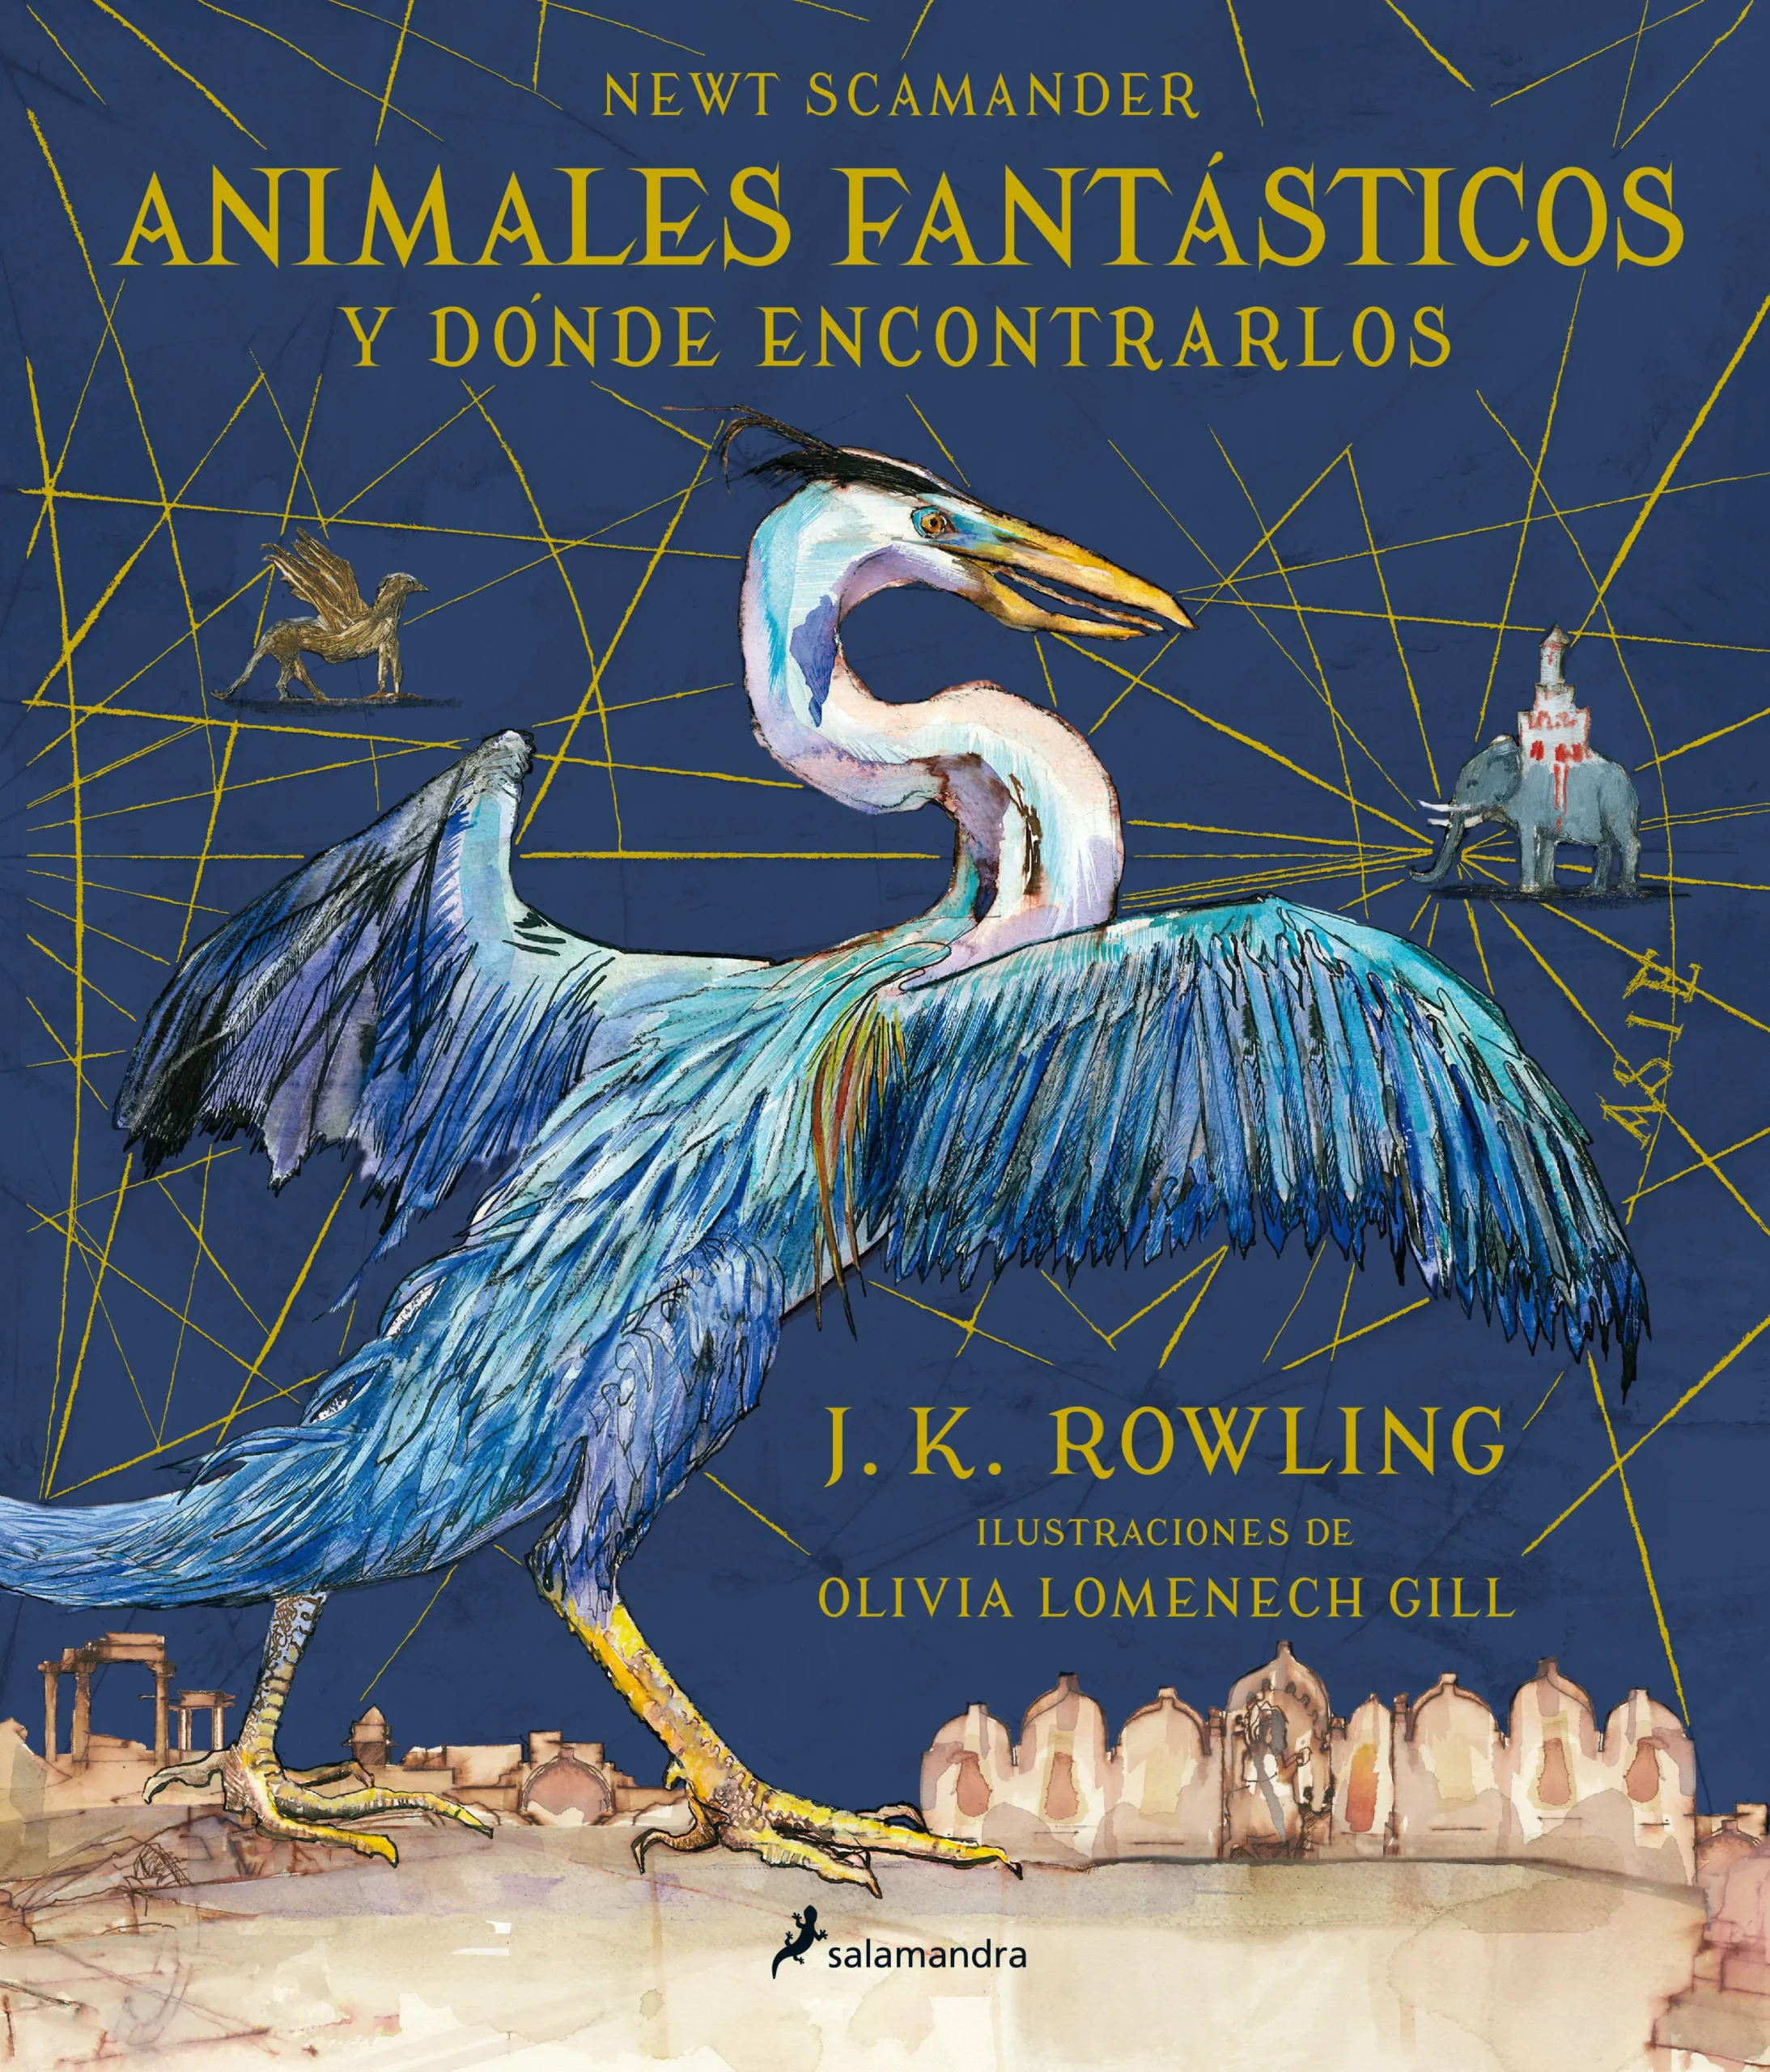 animales fantasticos y donde encontrarlos libro resumen - Qué es Animales fantásticos de Harry Potter